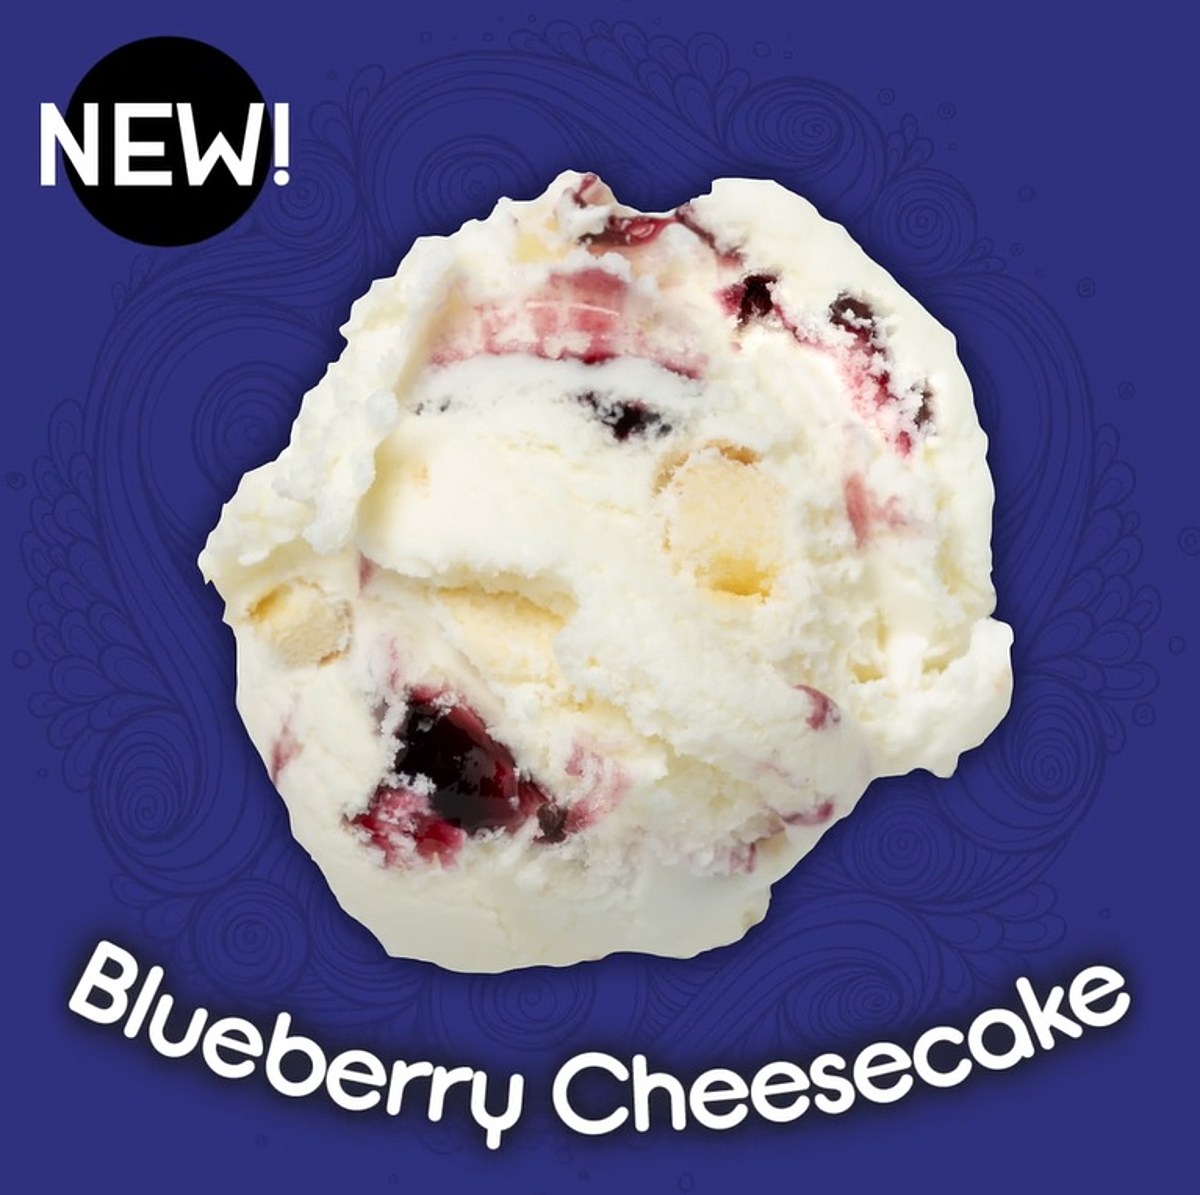 2023 New Flavors - Perry's Ice Cream